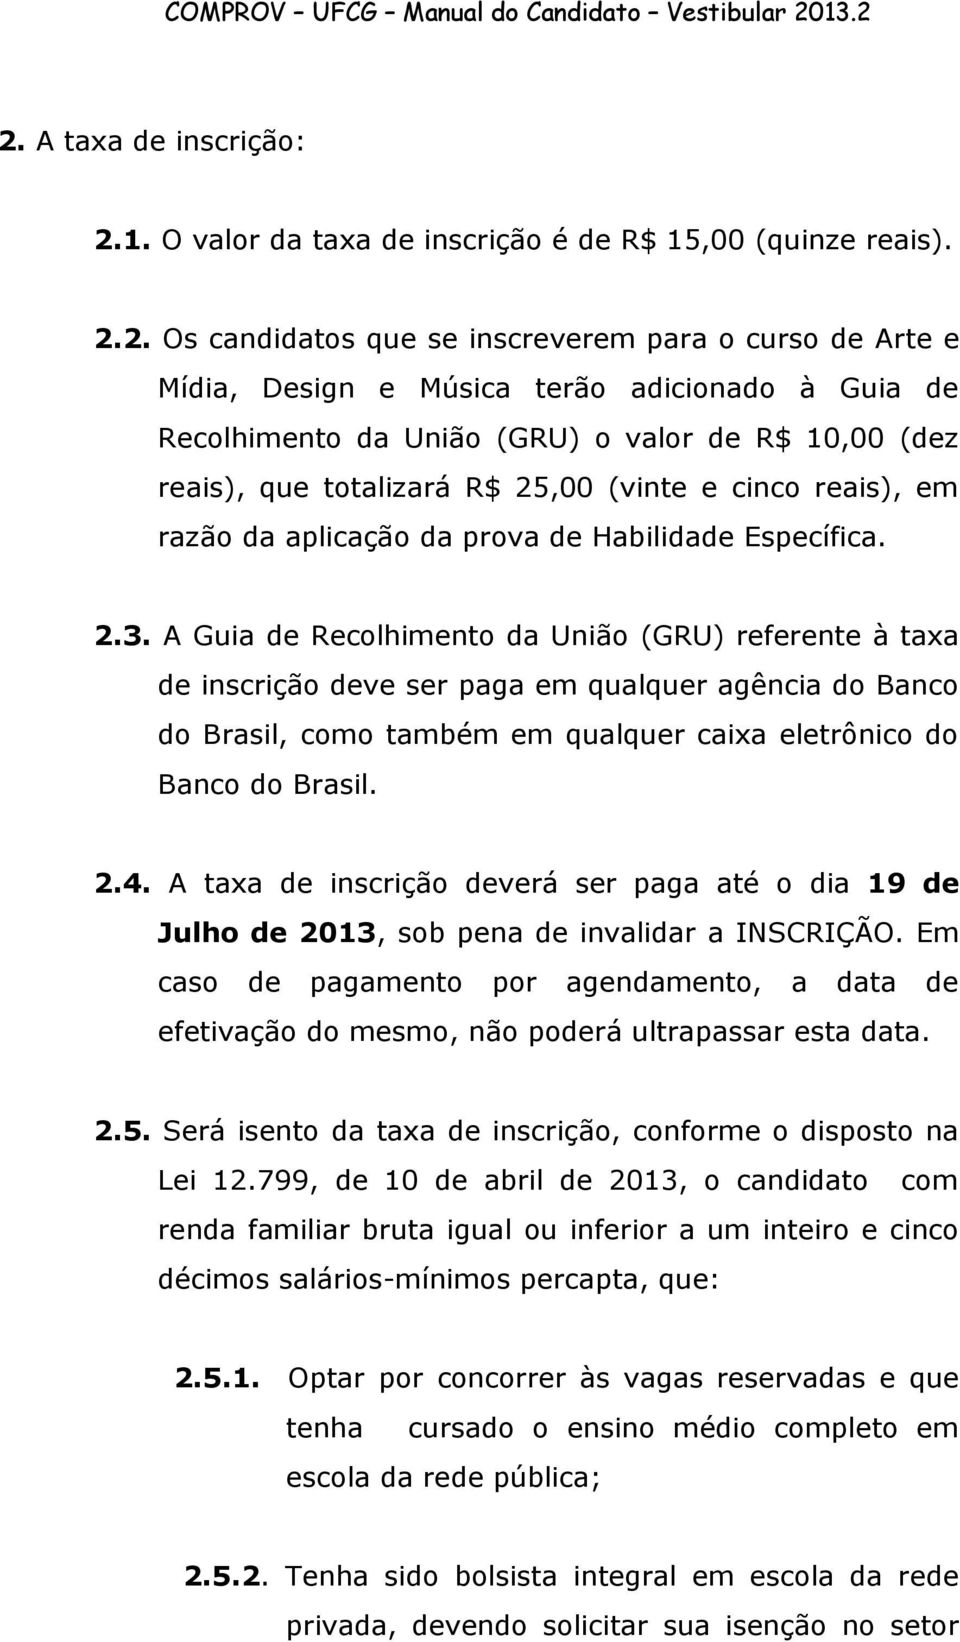 A Guia de Recolhimento da União (GRU) referente à taxa de inscrição deve ser paga em qualquer agência do Banco do Brasil, como também em qualquer caixa eletrônico do Banco do Brasil. 2.4.